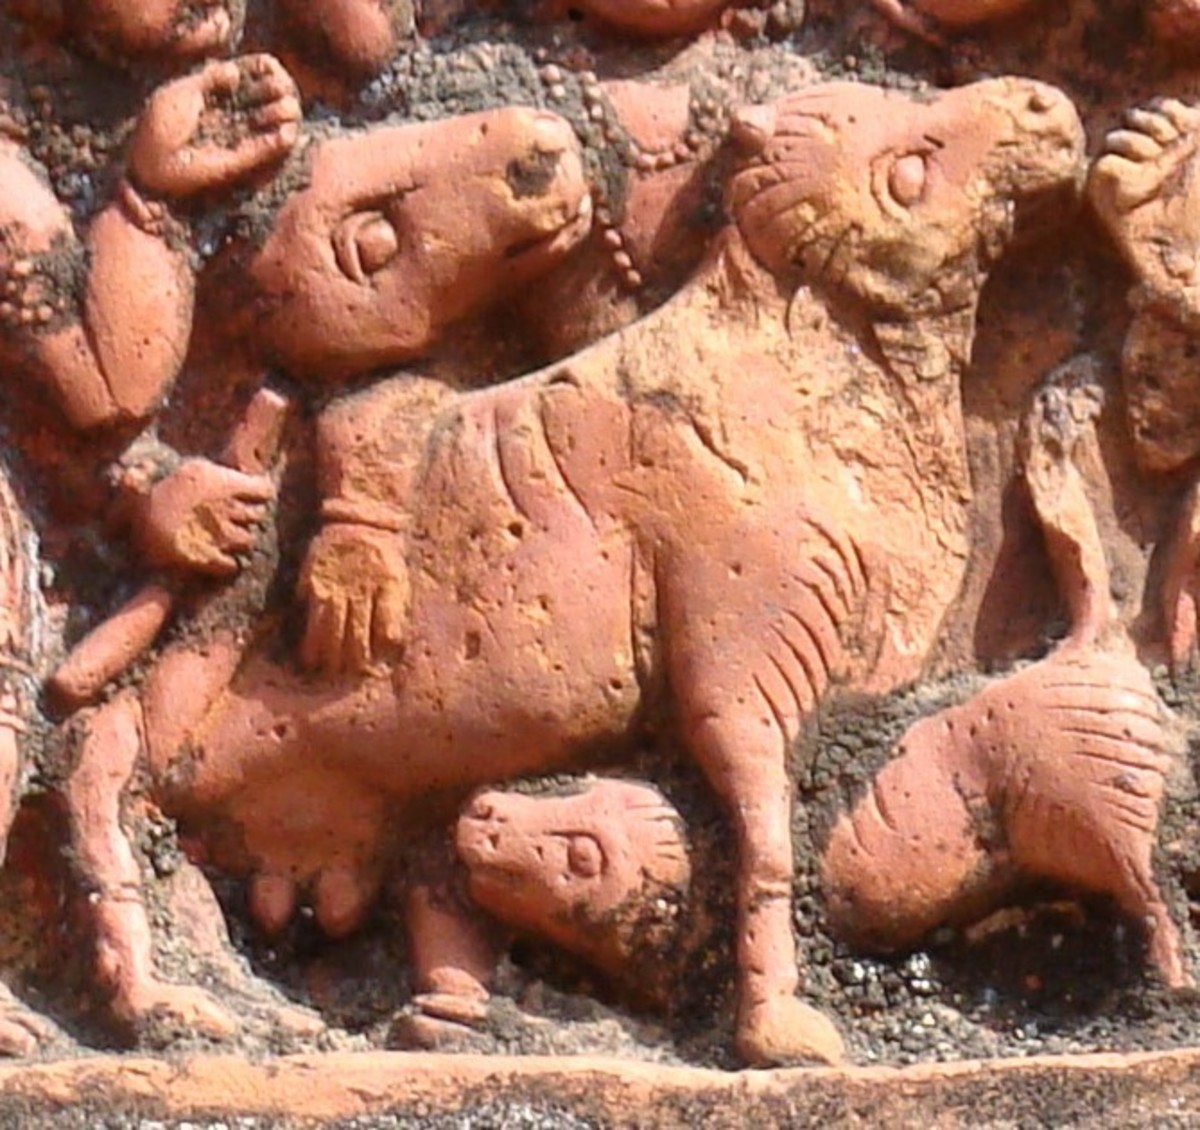 Cow and calf; terracotta; Lakshmi Janardan temple; Debipur, Purva Bardhaman